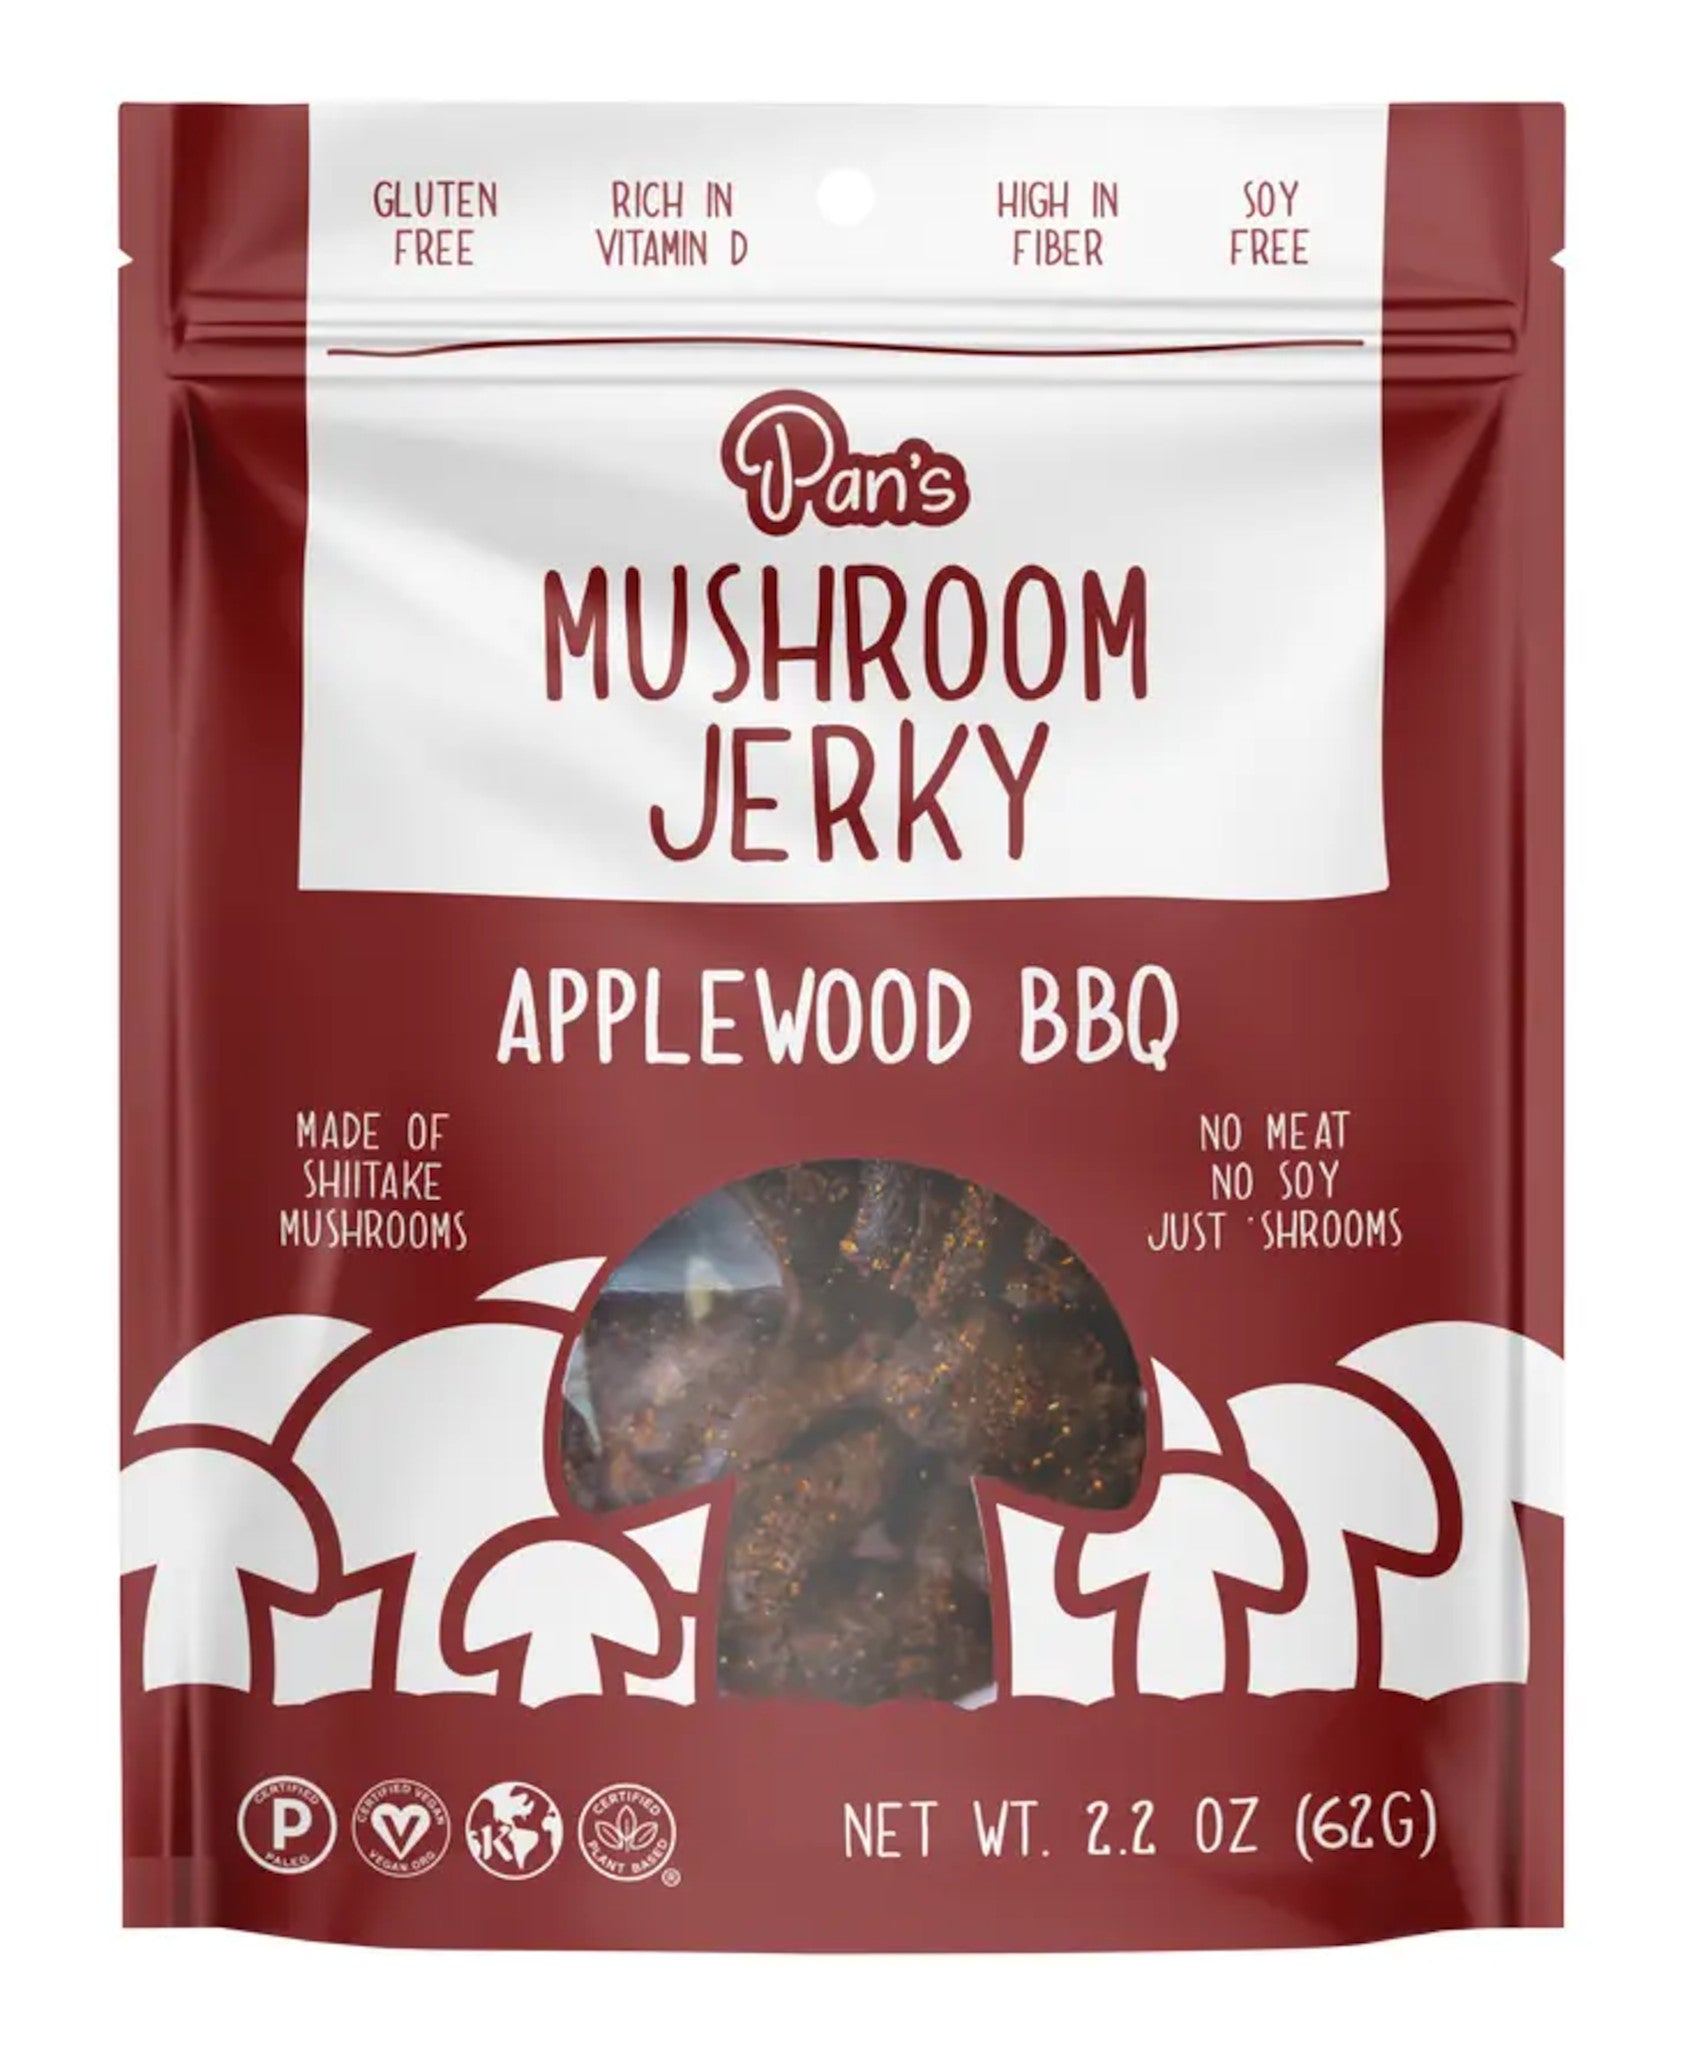 Applewood BBQ Mushroom Jerky